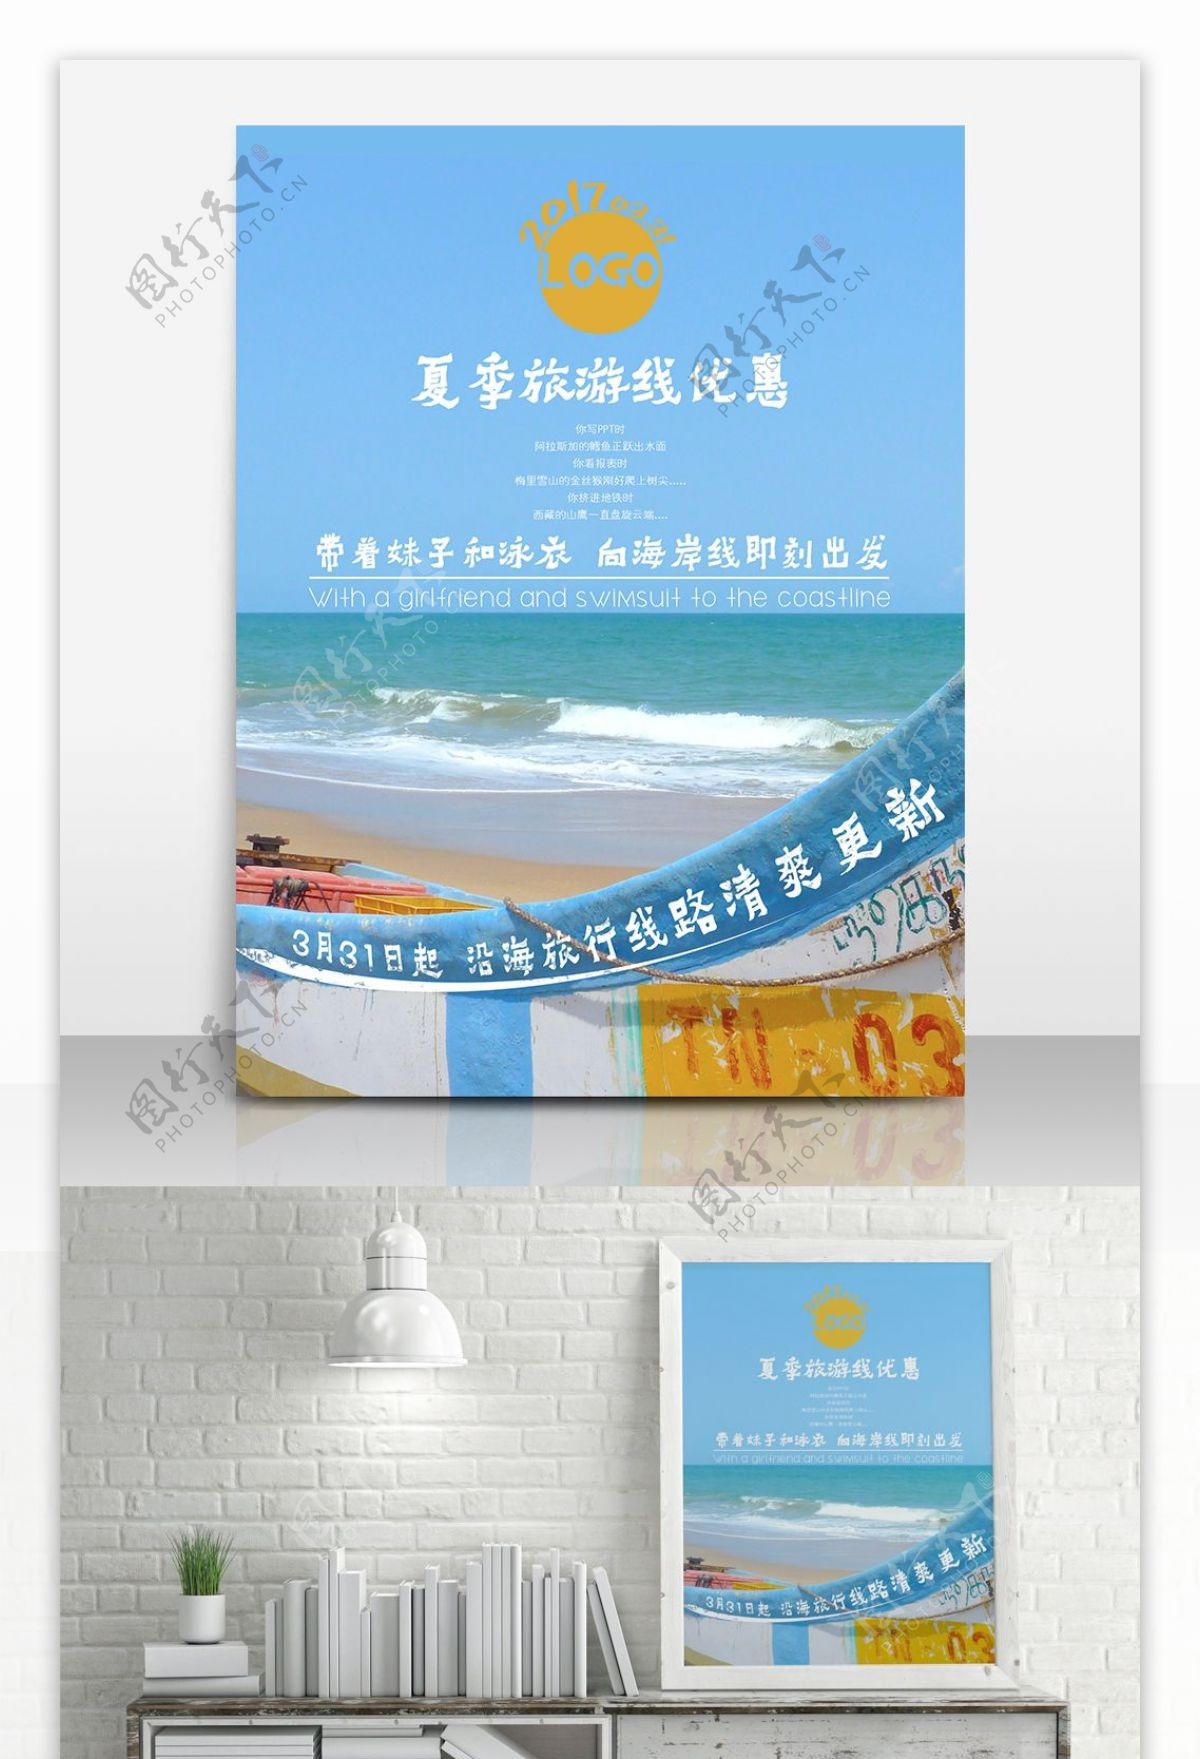 夏季旅游清爽蓝天白云沙滩帆船旅行社海报